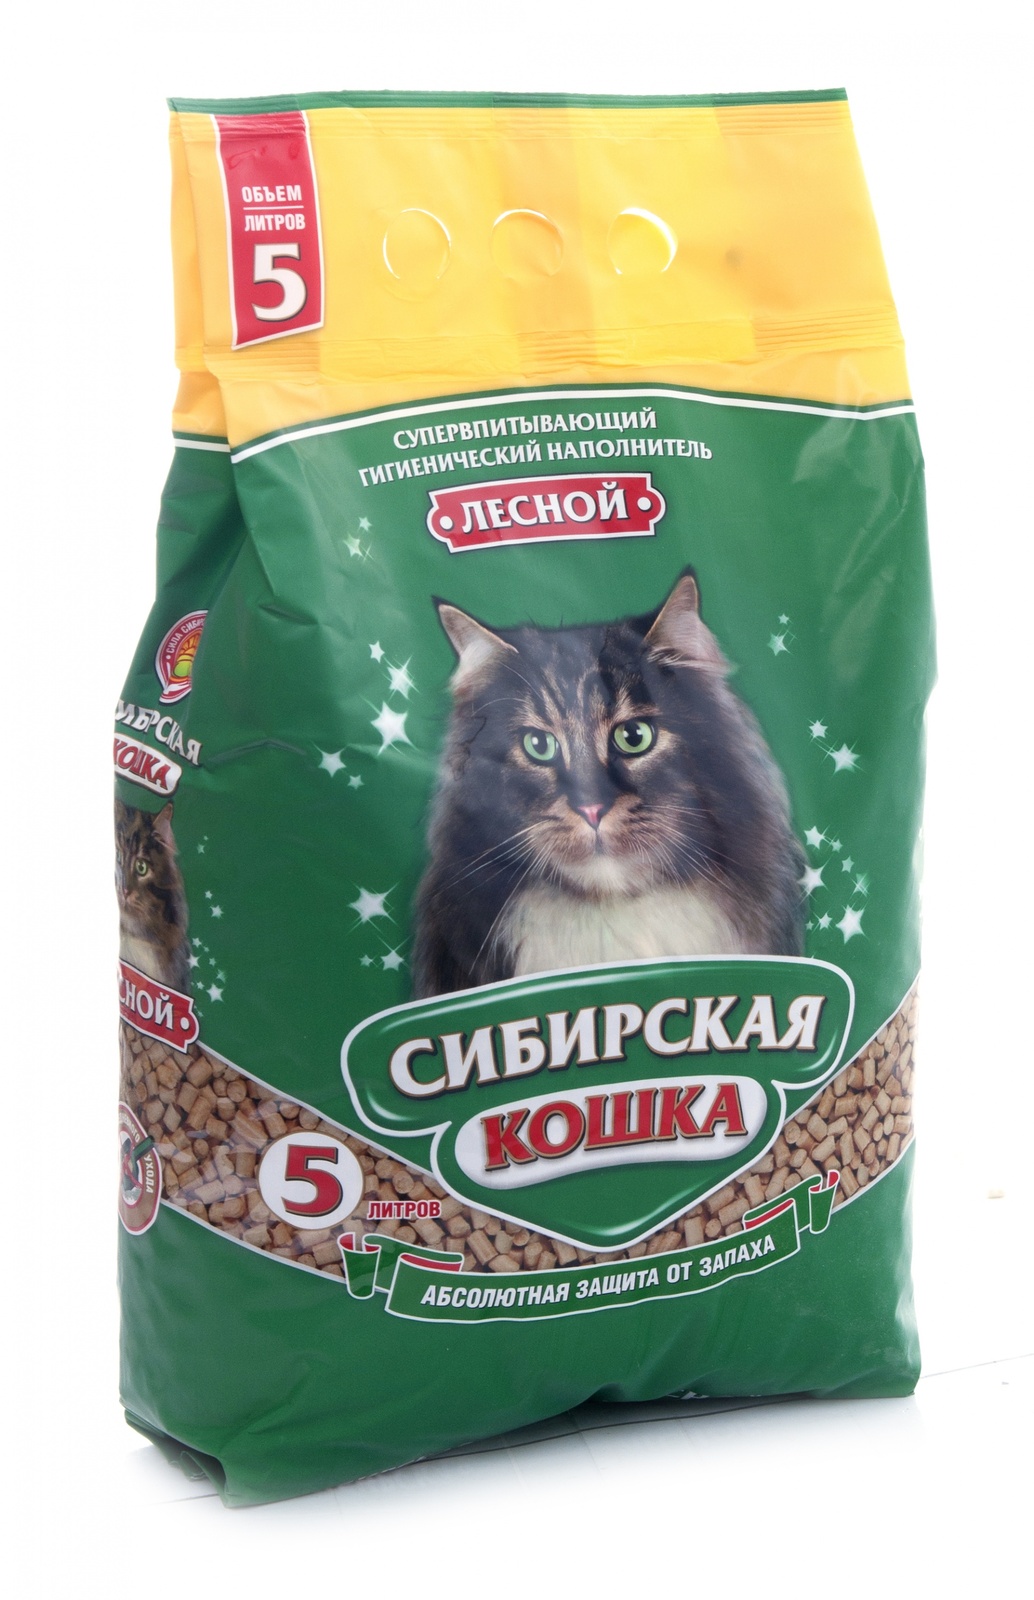 Сибирская кошка древесный наполнитель 